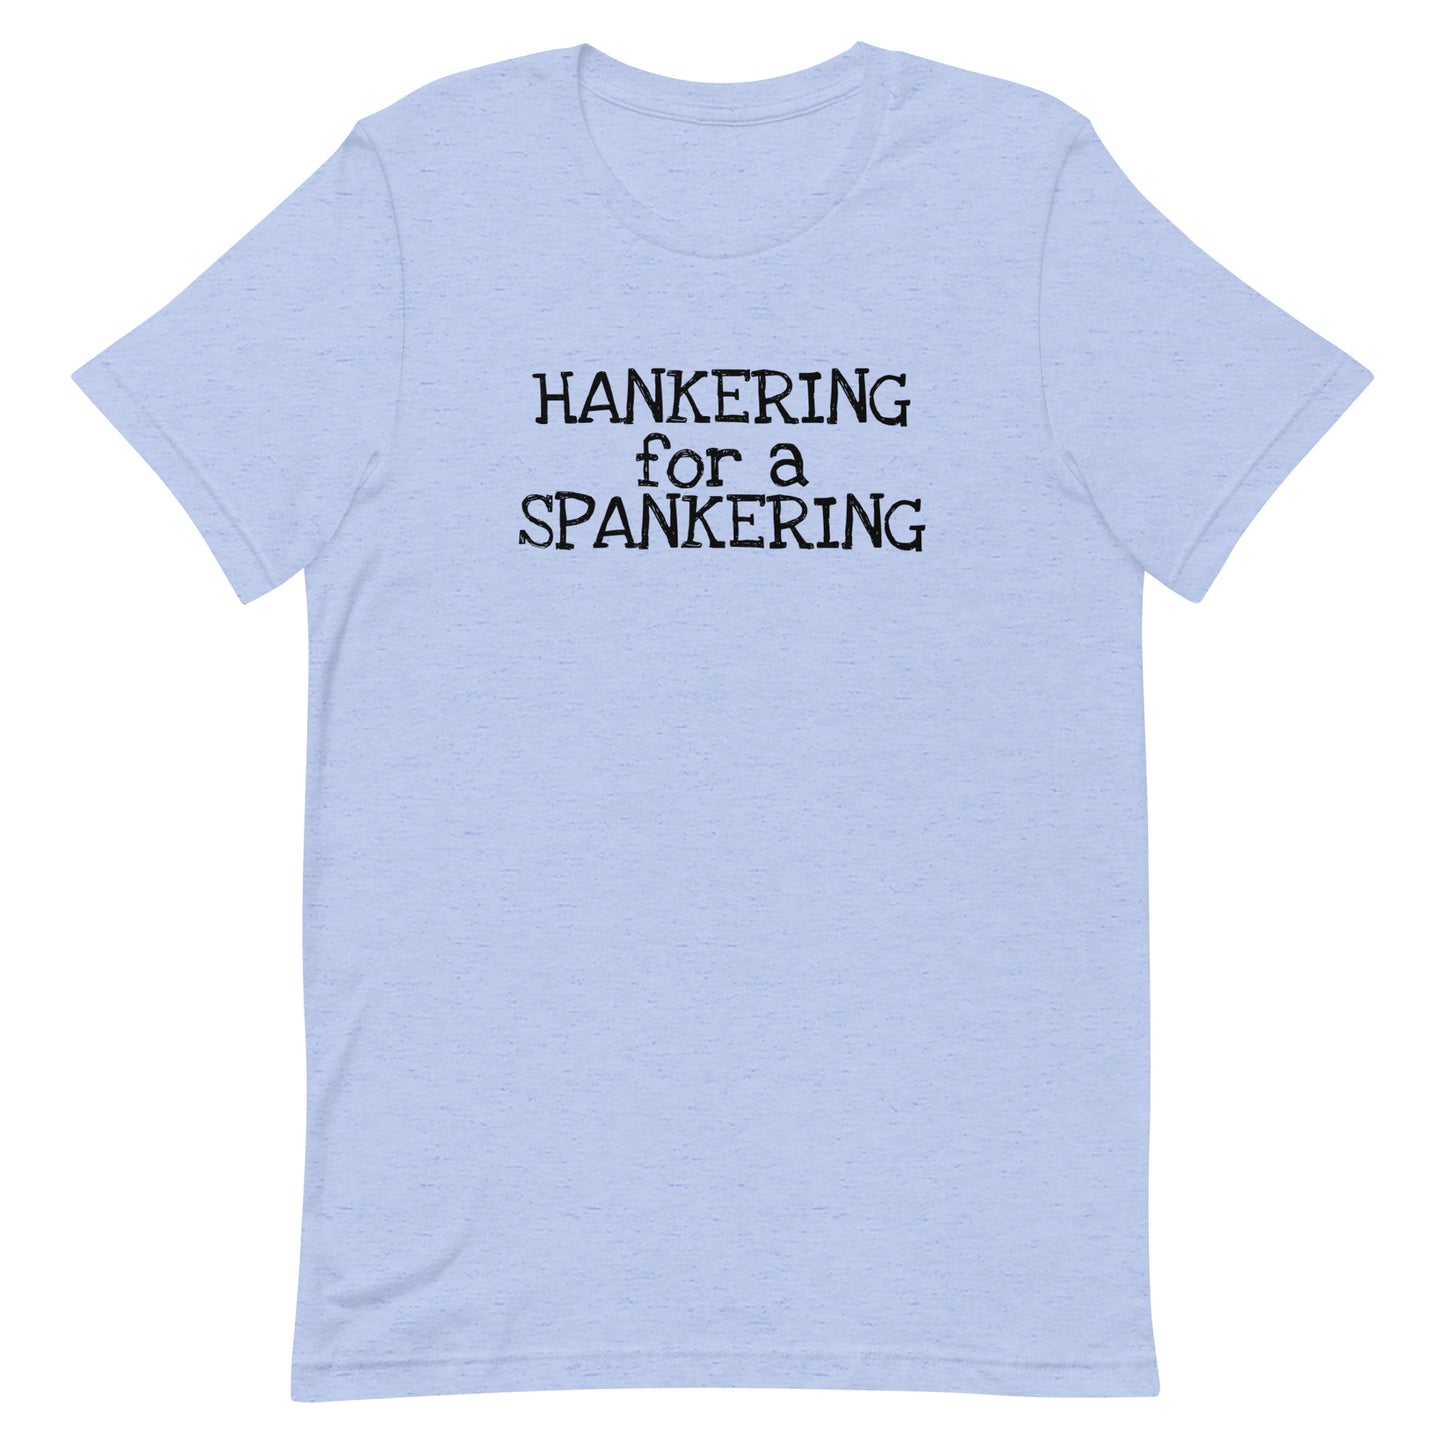 Hankering for a spankering